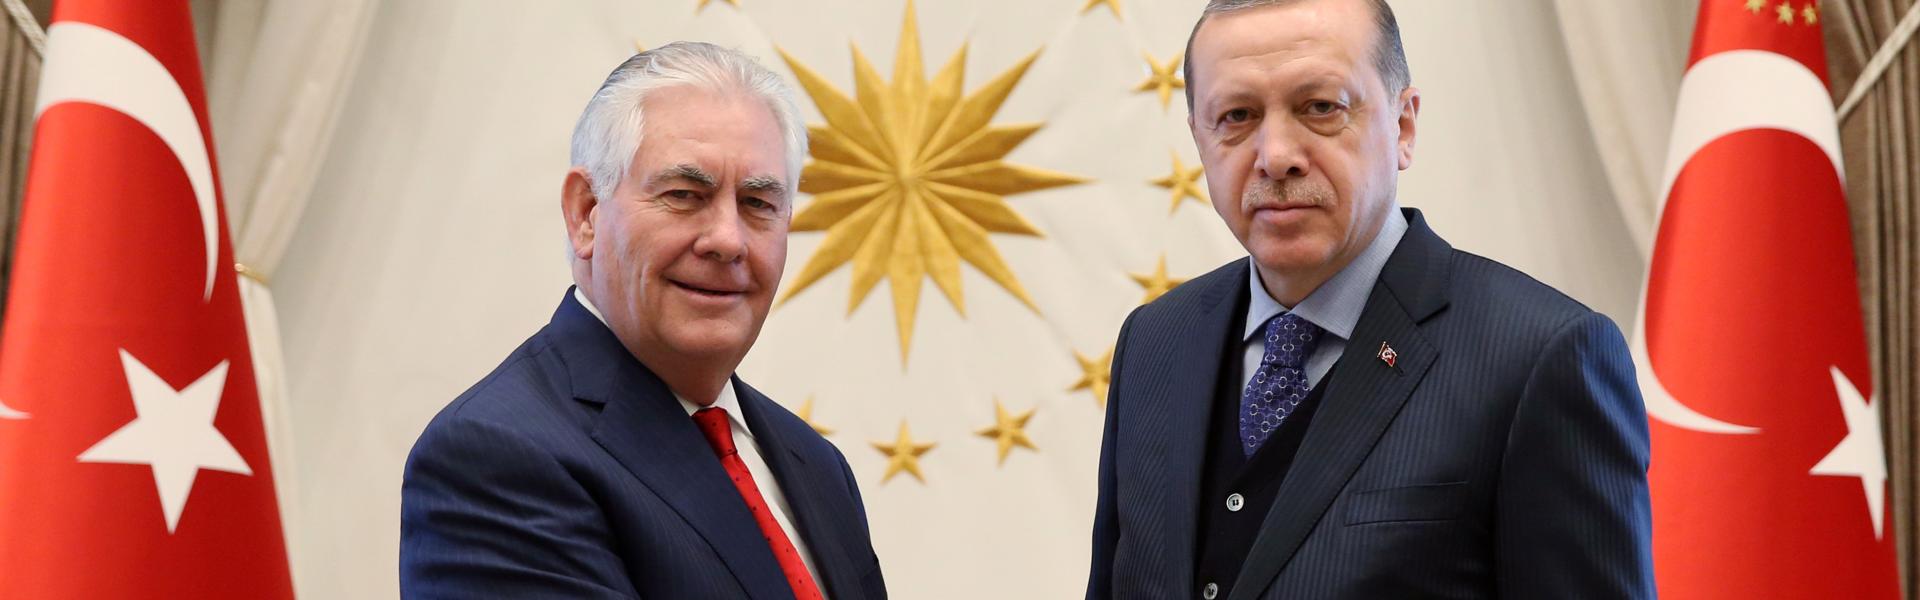 Ποια είναι η στάση των ΗΠΑ και Τουρκίας για την τρίωρη συνάντηση Ρ. Τίλερσον- Ρ. Τ. Ερντογάν